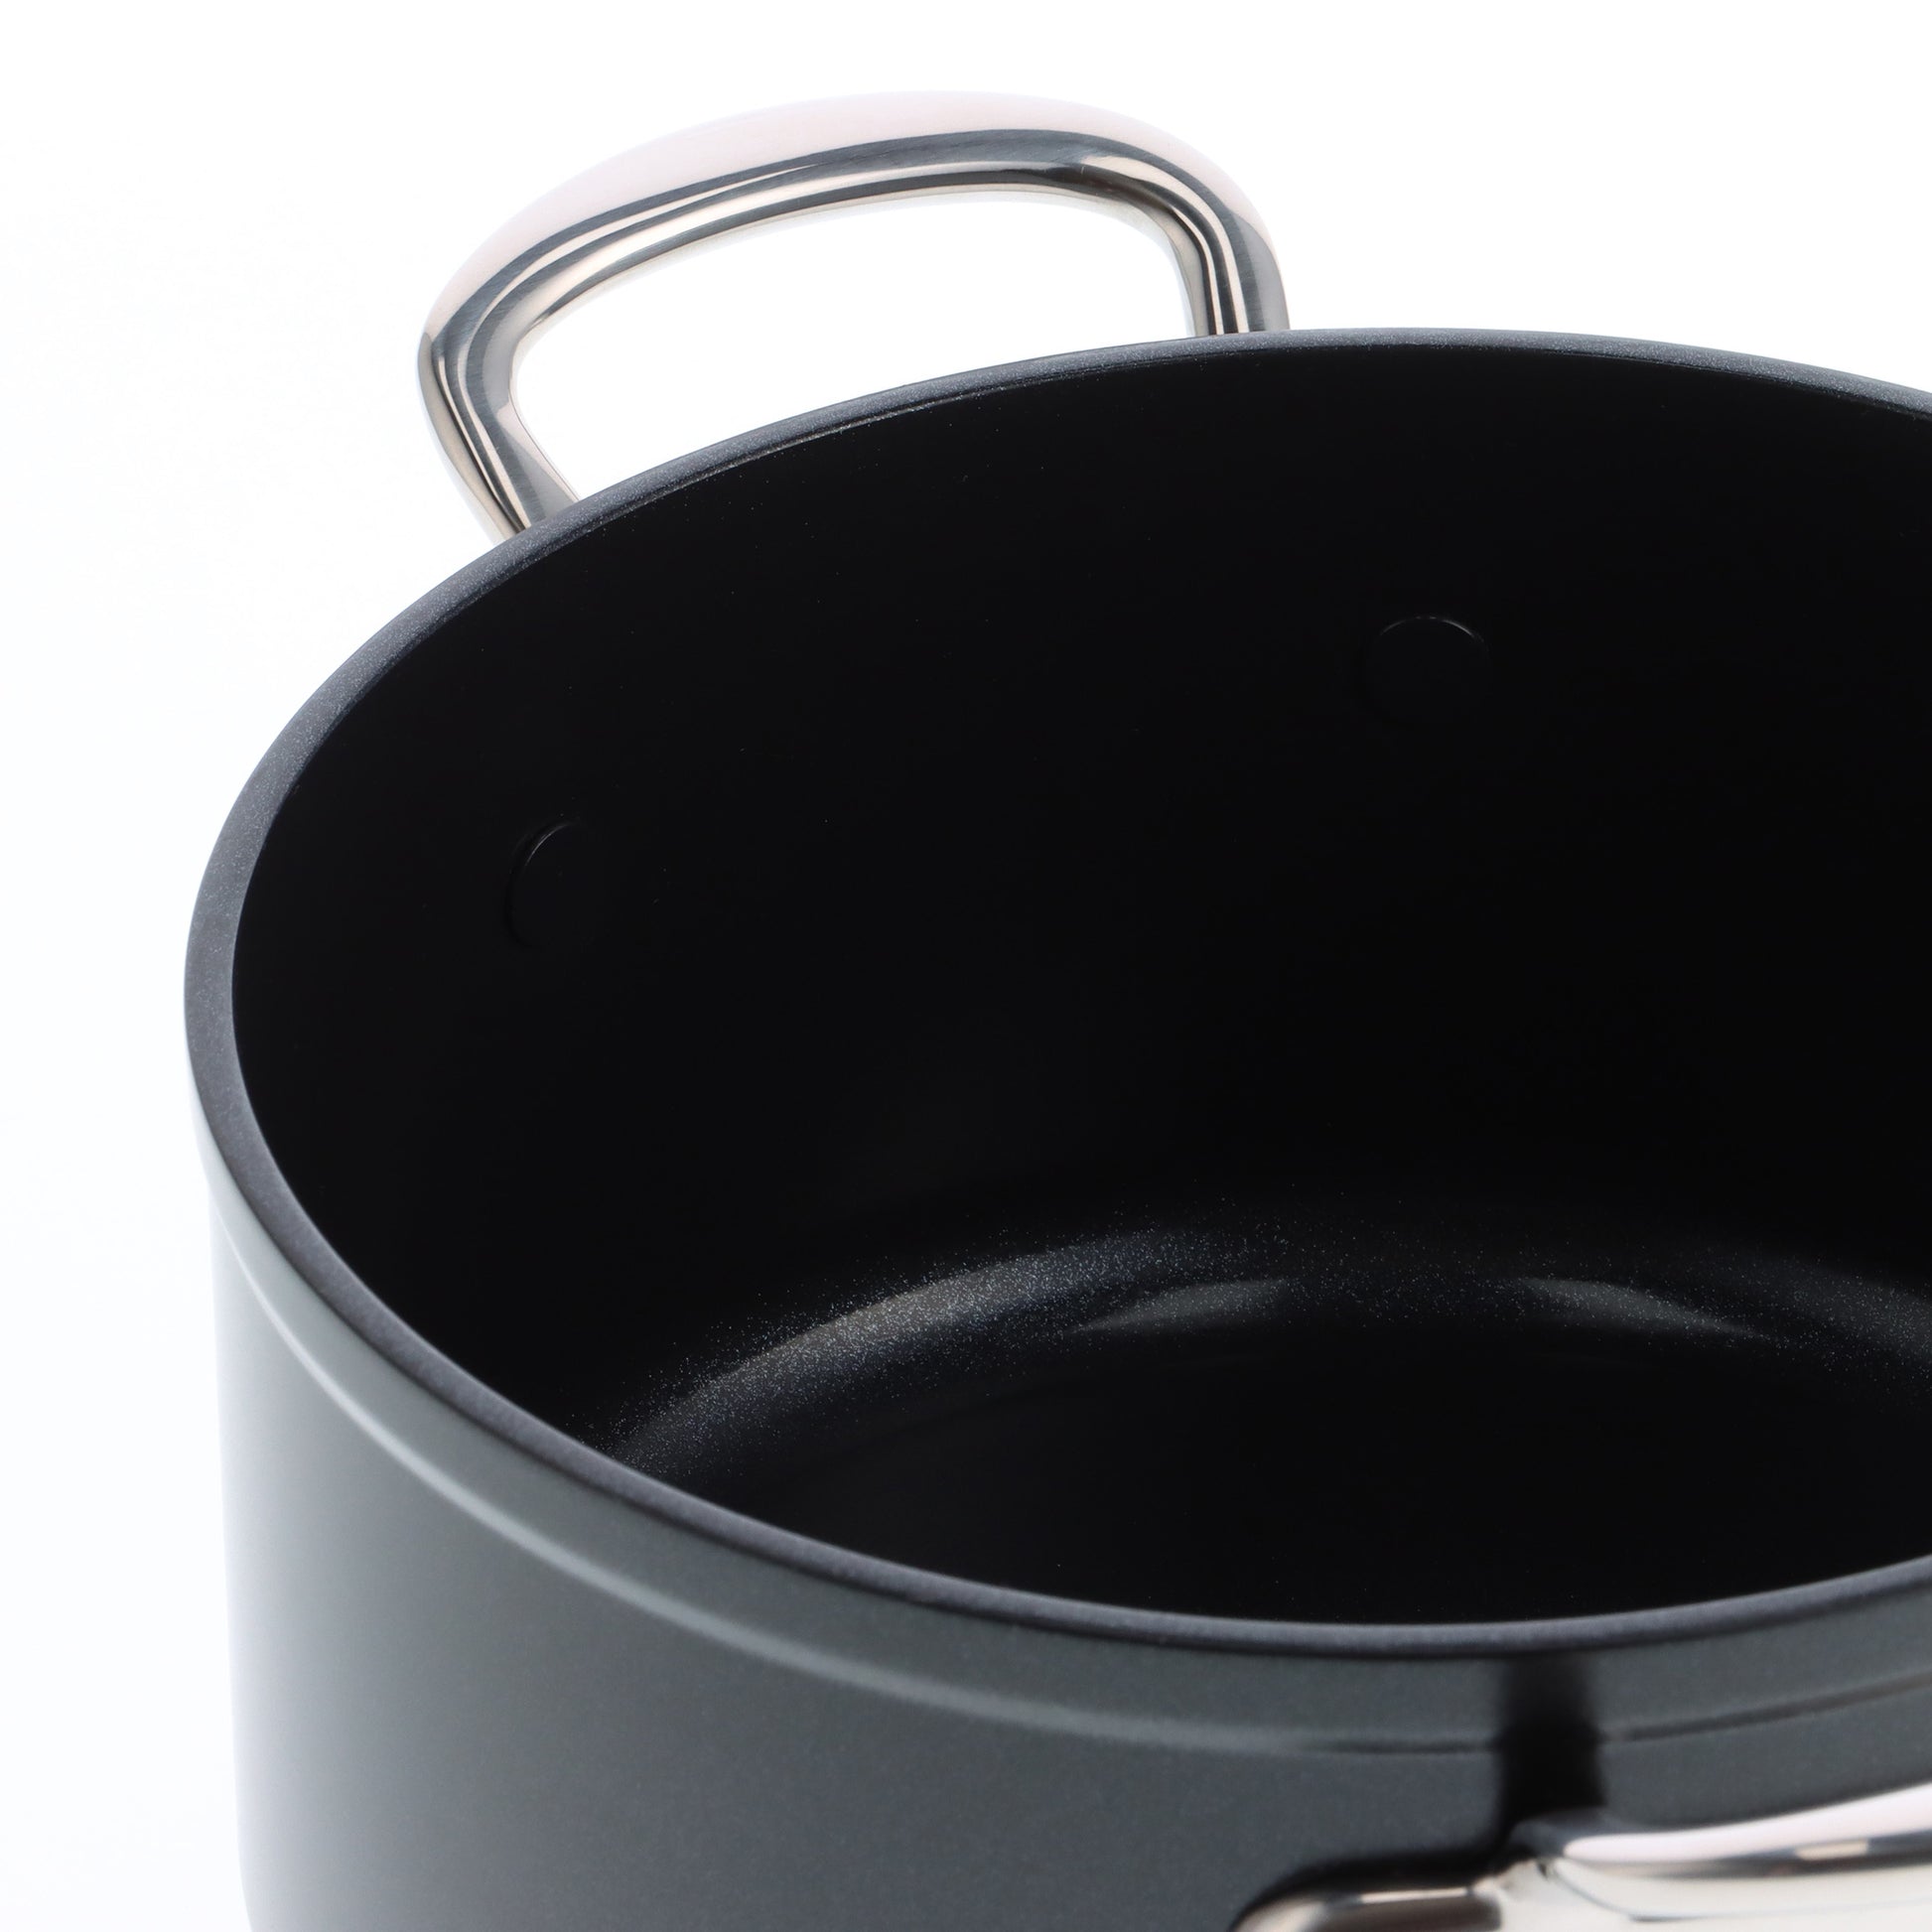 Barcelona Pro Kookpot met deksel 24cm zwart binnenkant